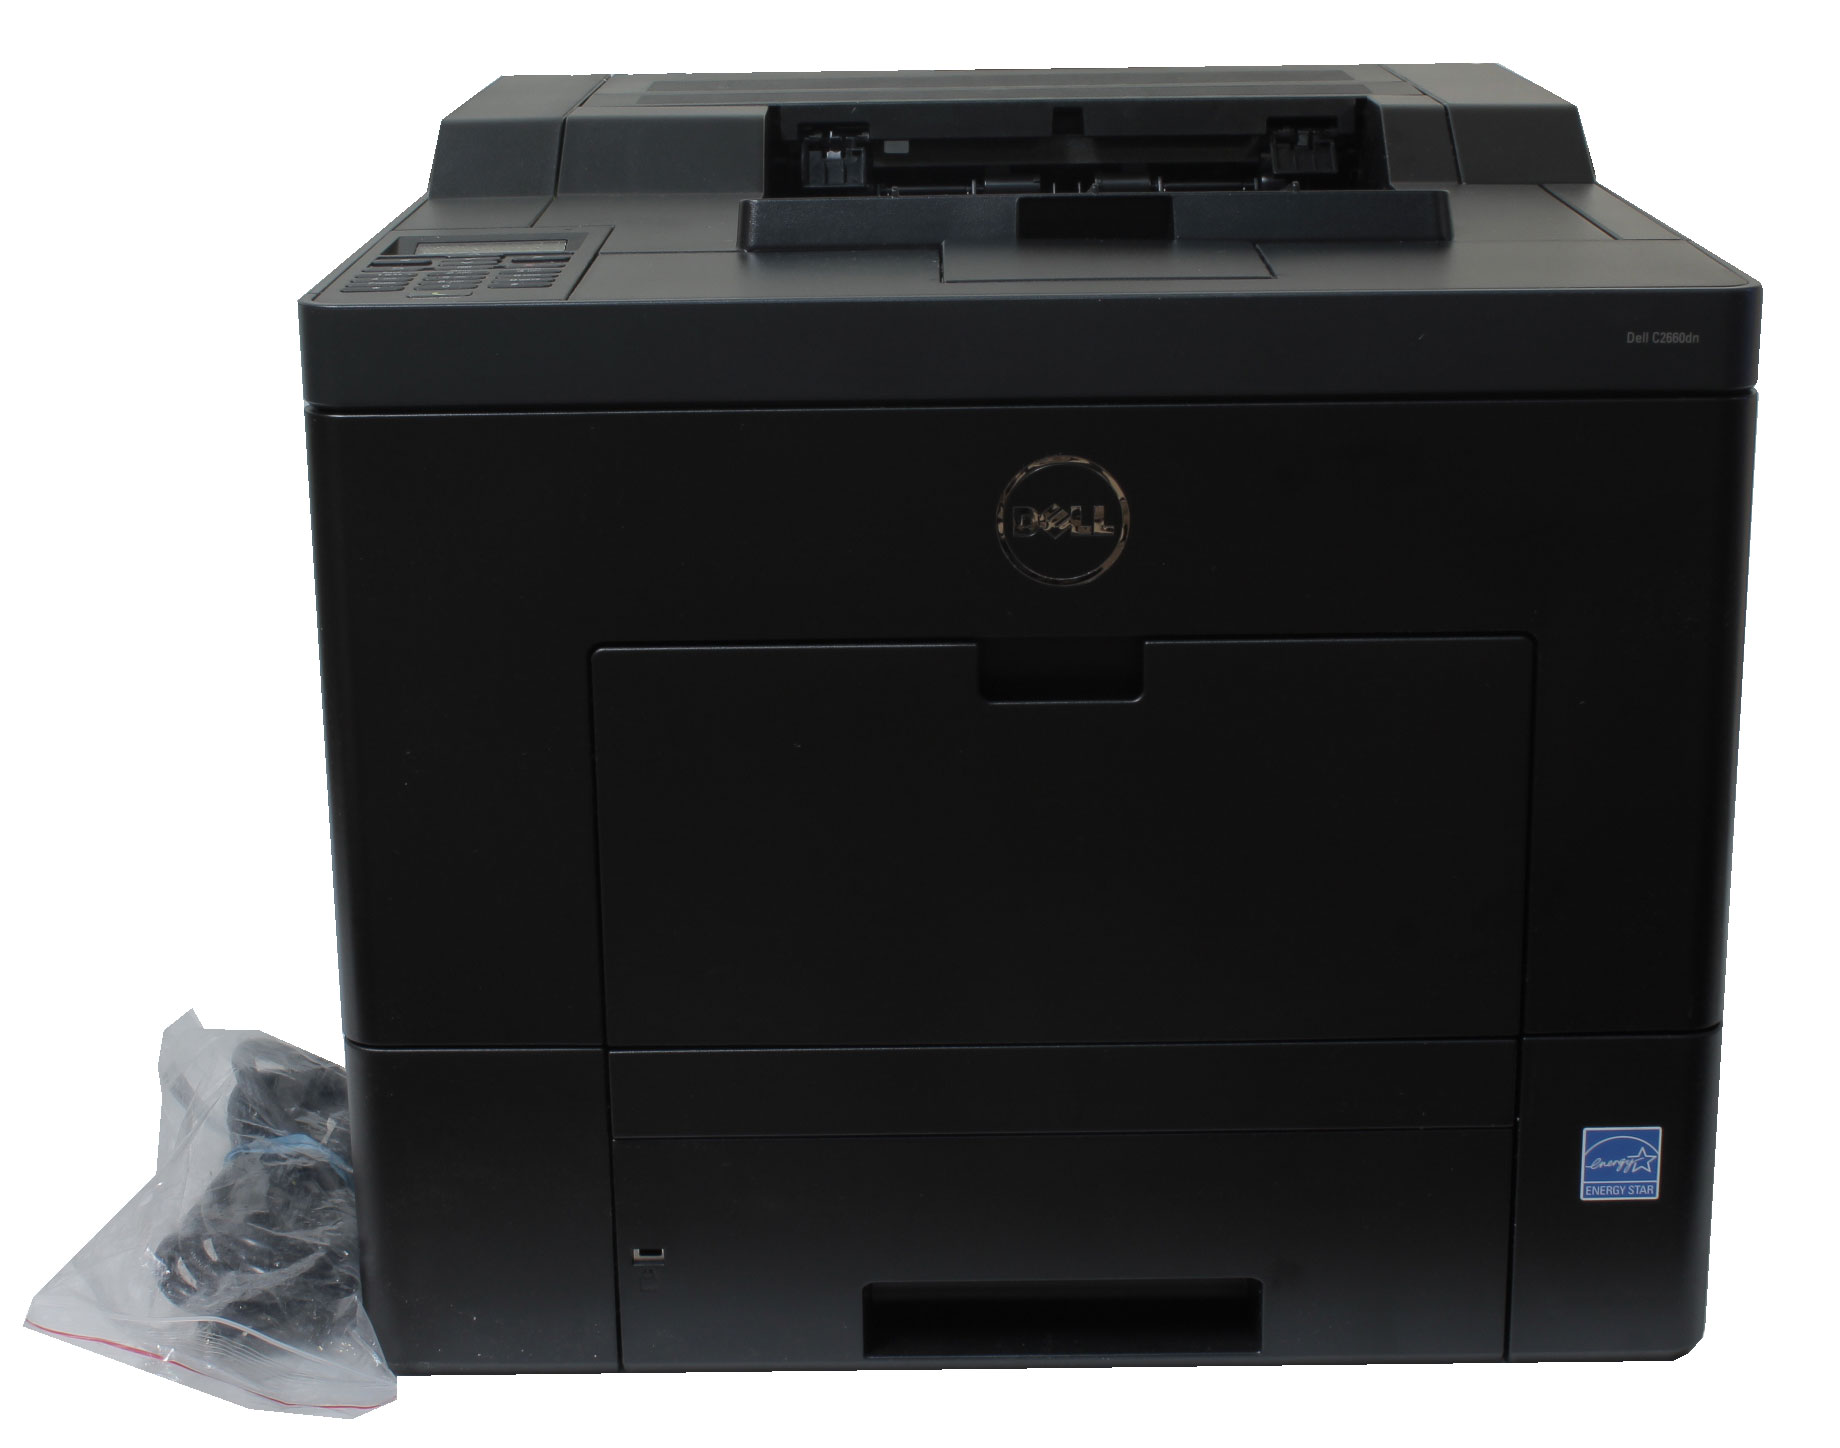 Dell C2660dn Color Laser Printer Duplex Black 0164W2